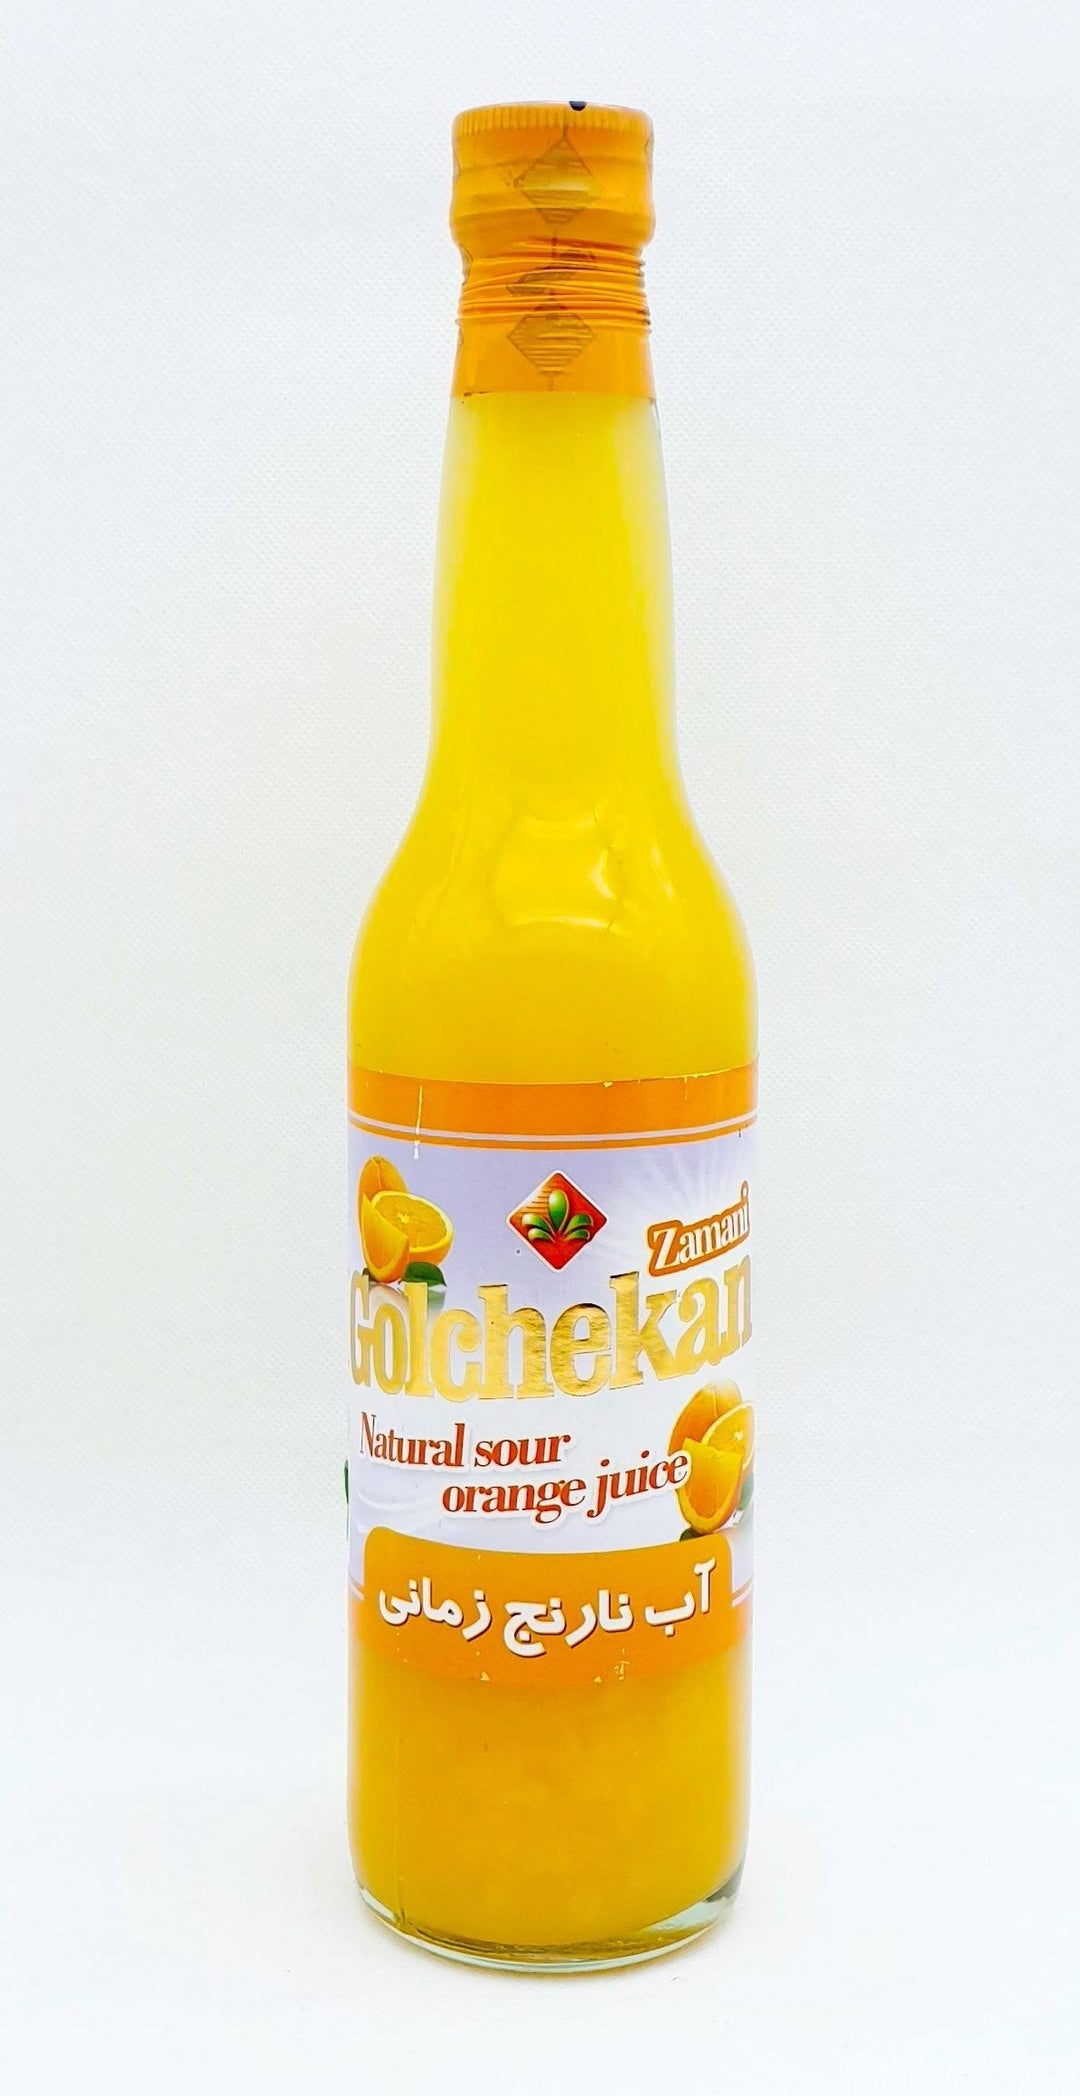 Zamani Abe Narenj - Saurer Orangensaft - Persienmarkt